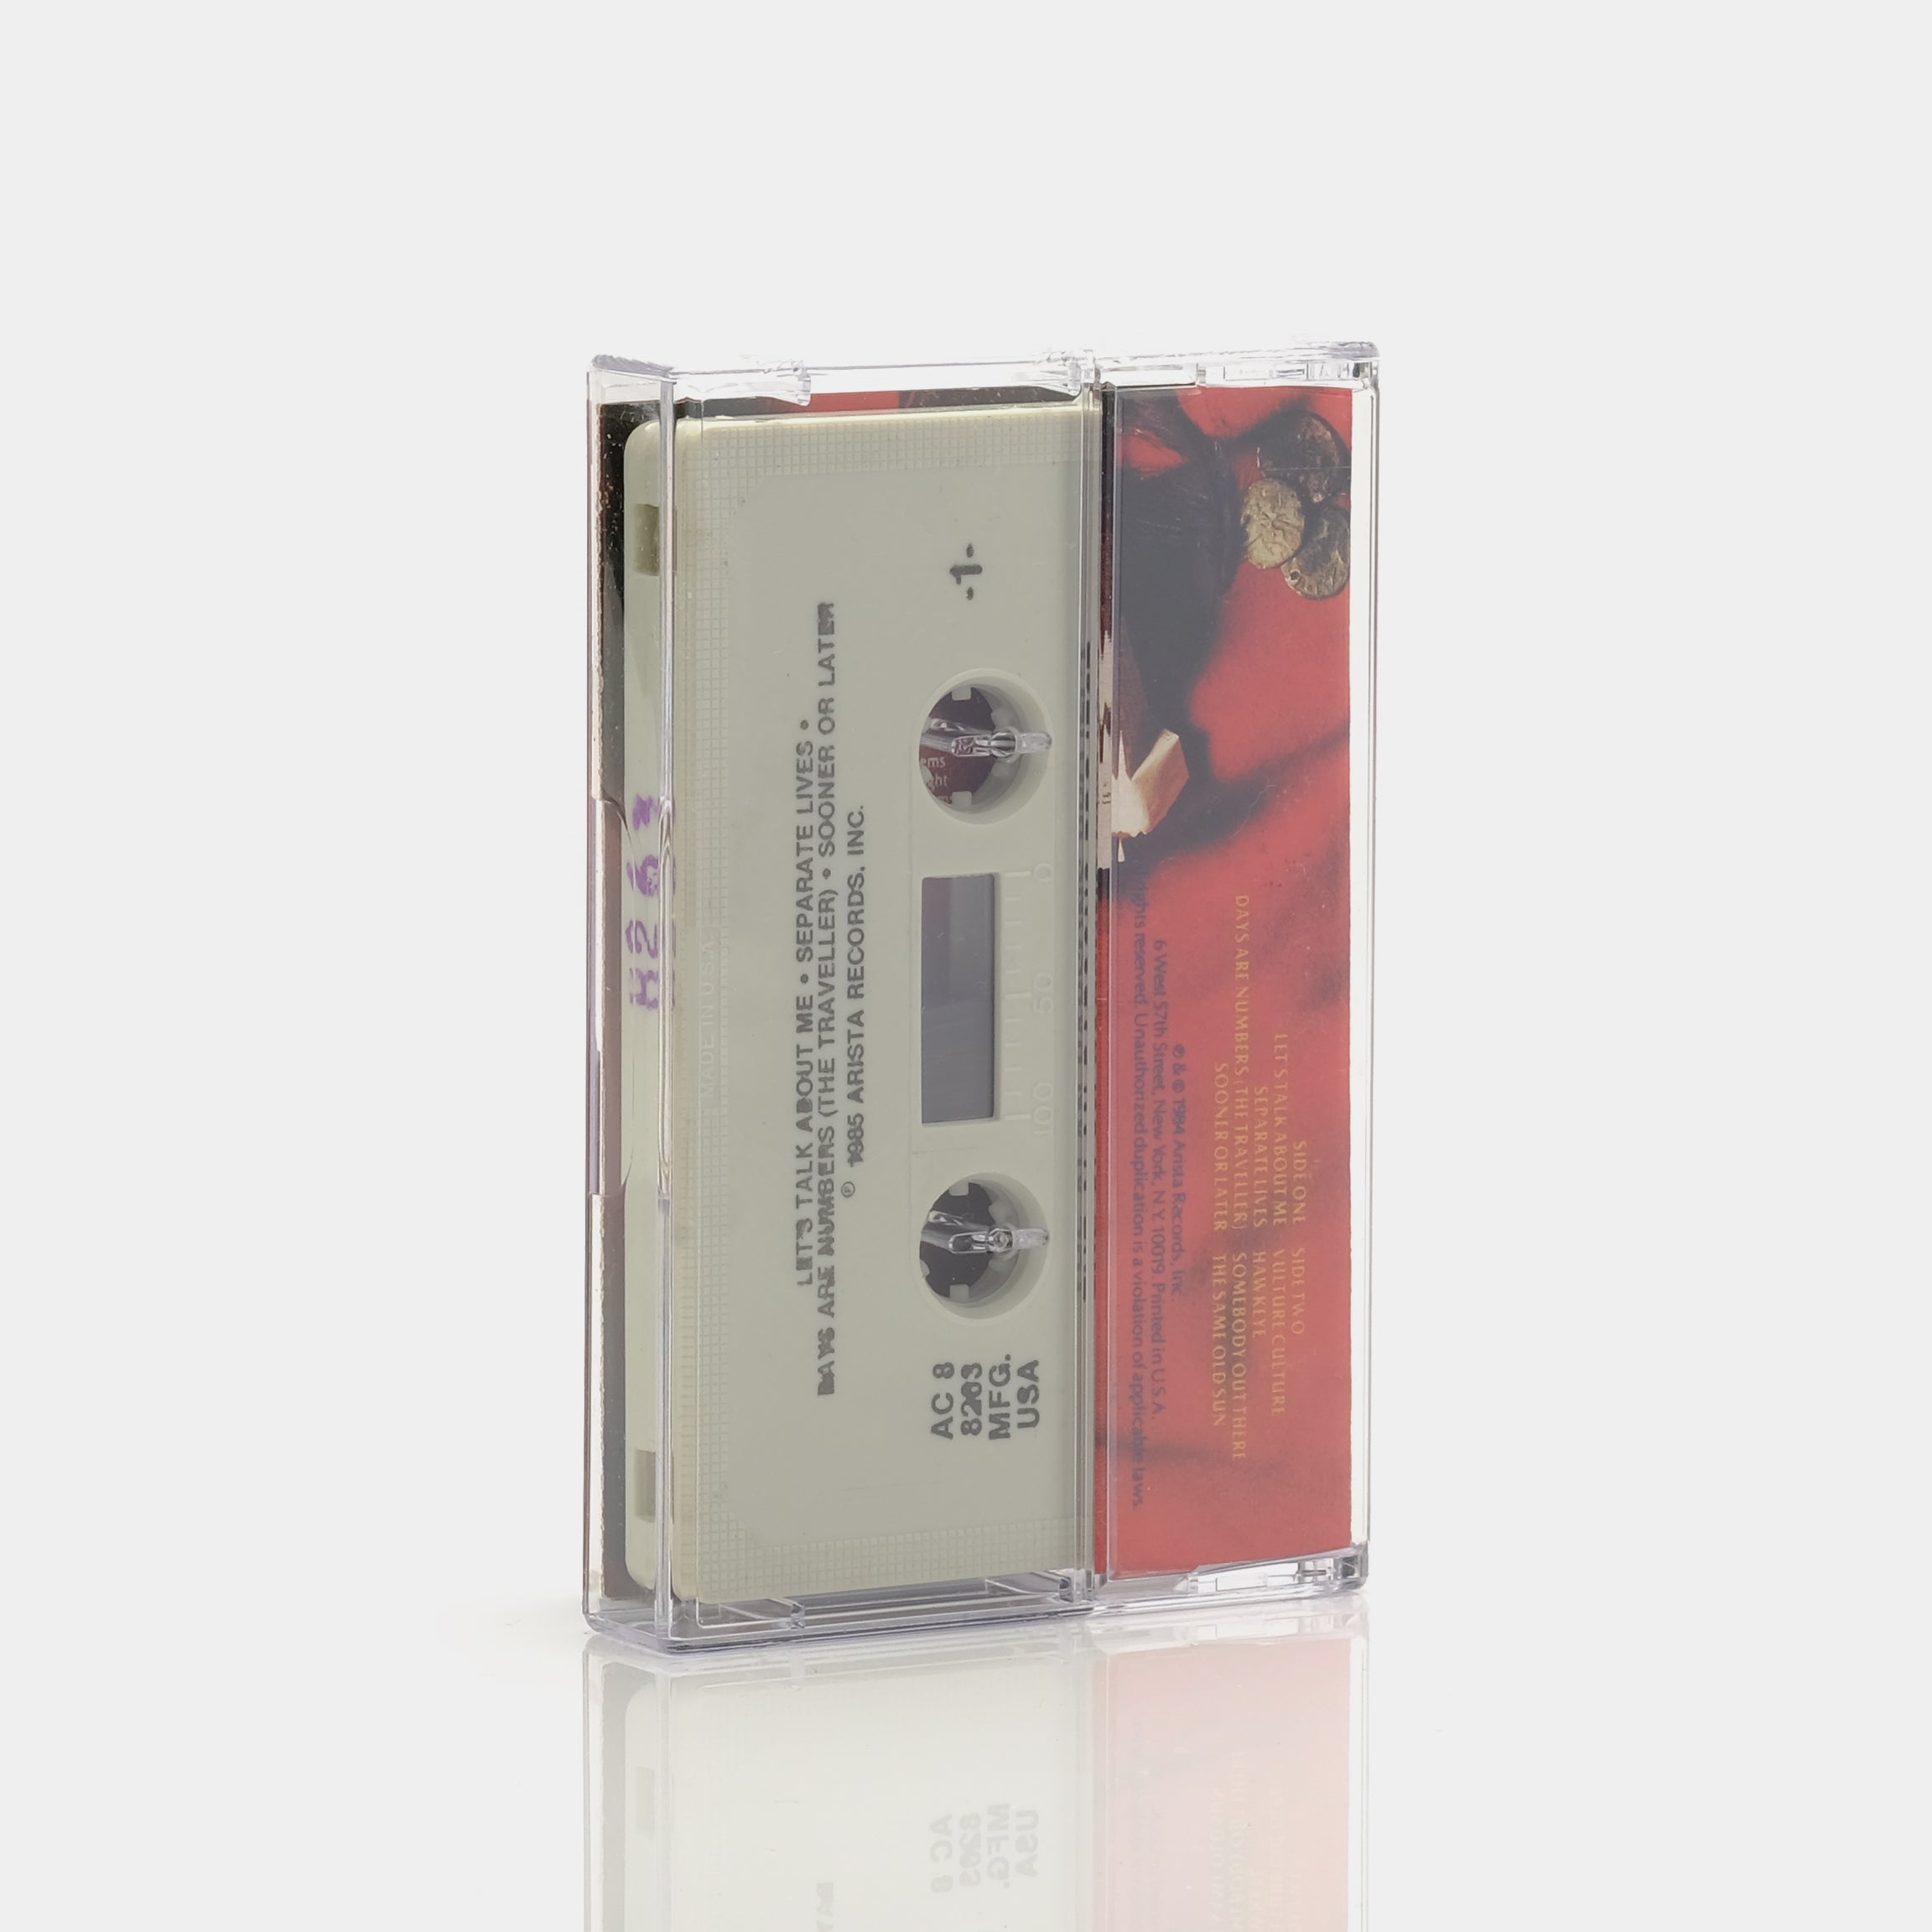 The Alan Parsons Project - Vulture Culture Cassette Tape